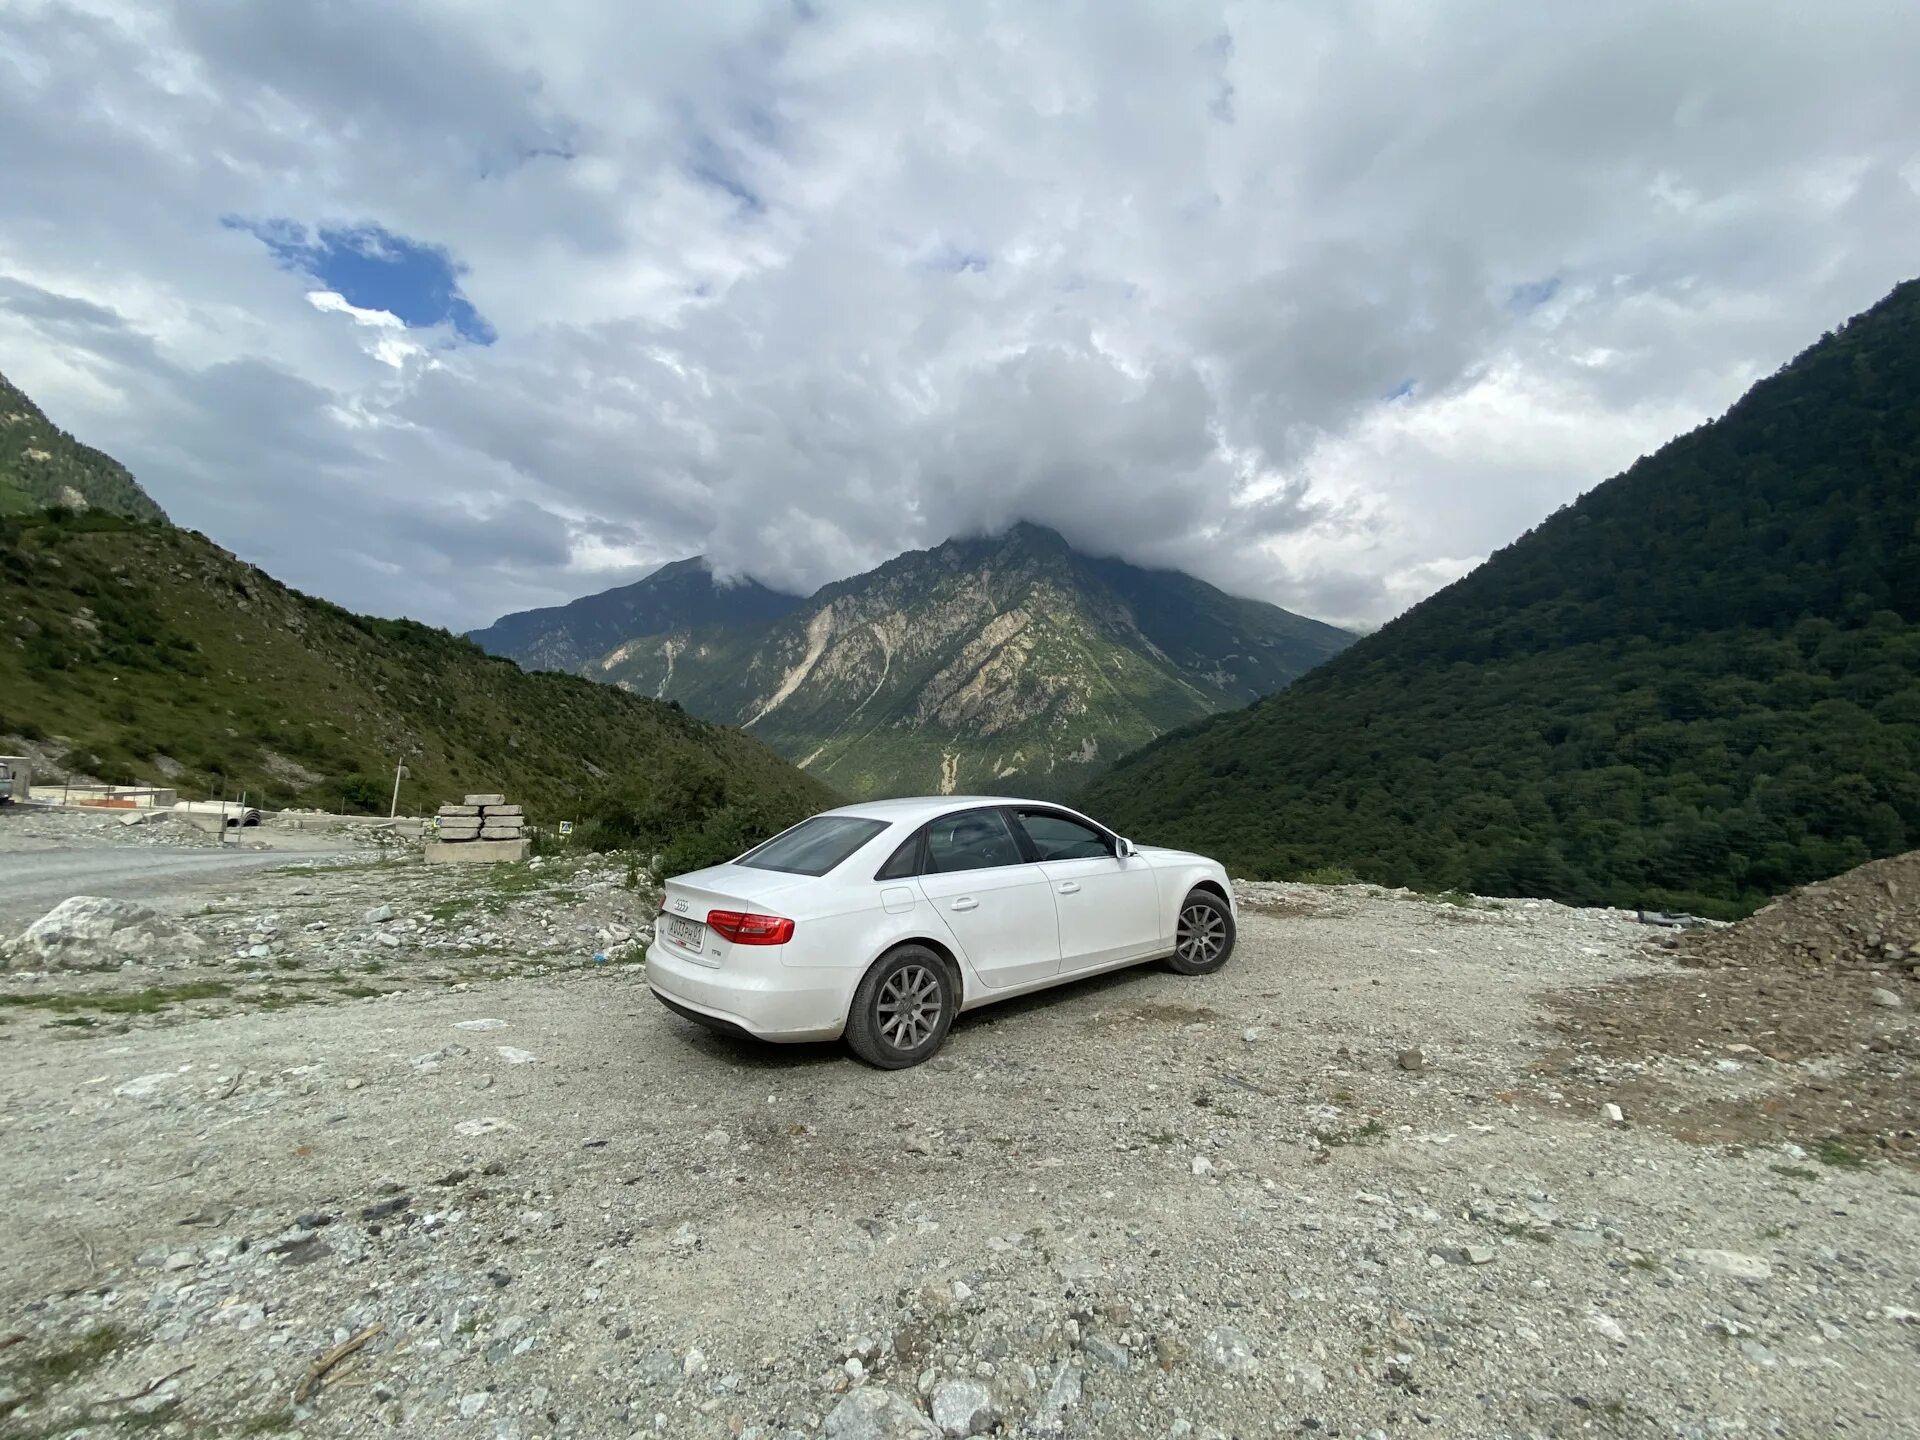 Автомобилей с пробегом северная осетия. Осетия. Красивые места Северной Осетии на машине. Кезенойам, Чечня/Дагестан. Дагестан или Осетия.